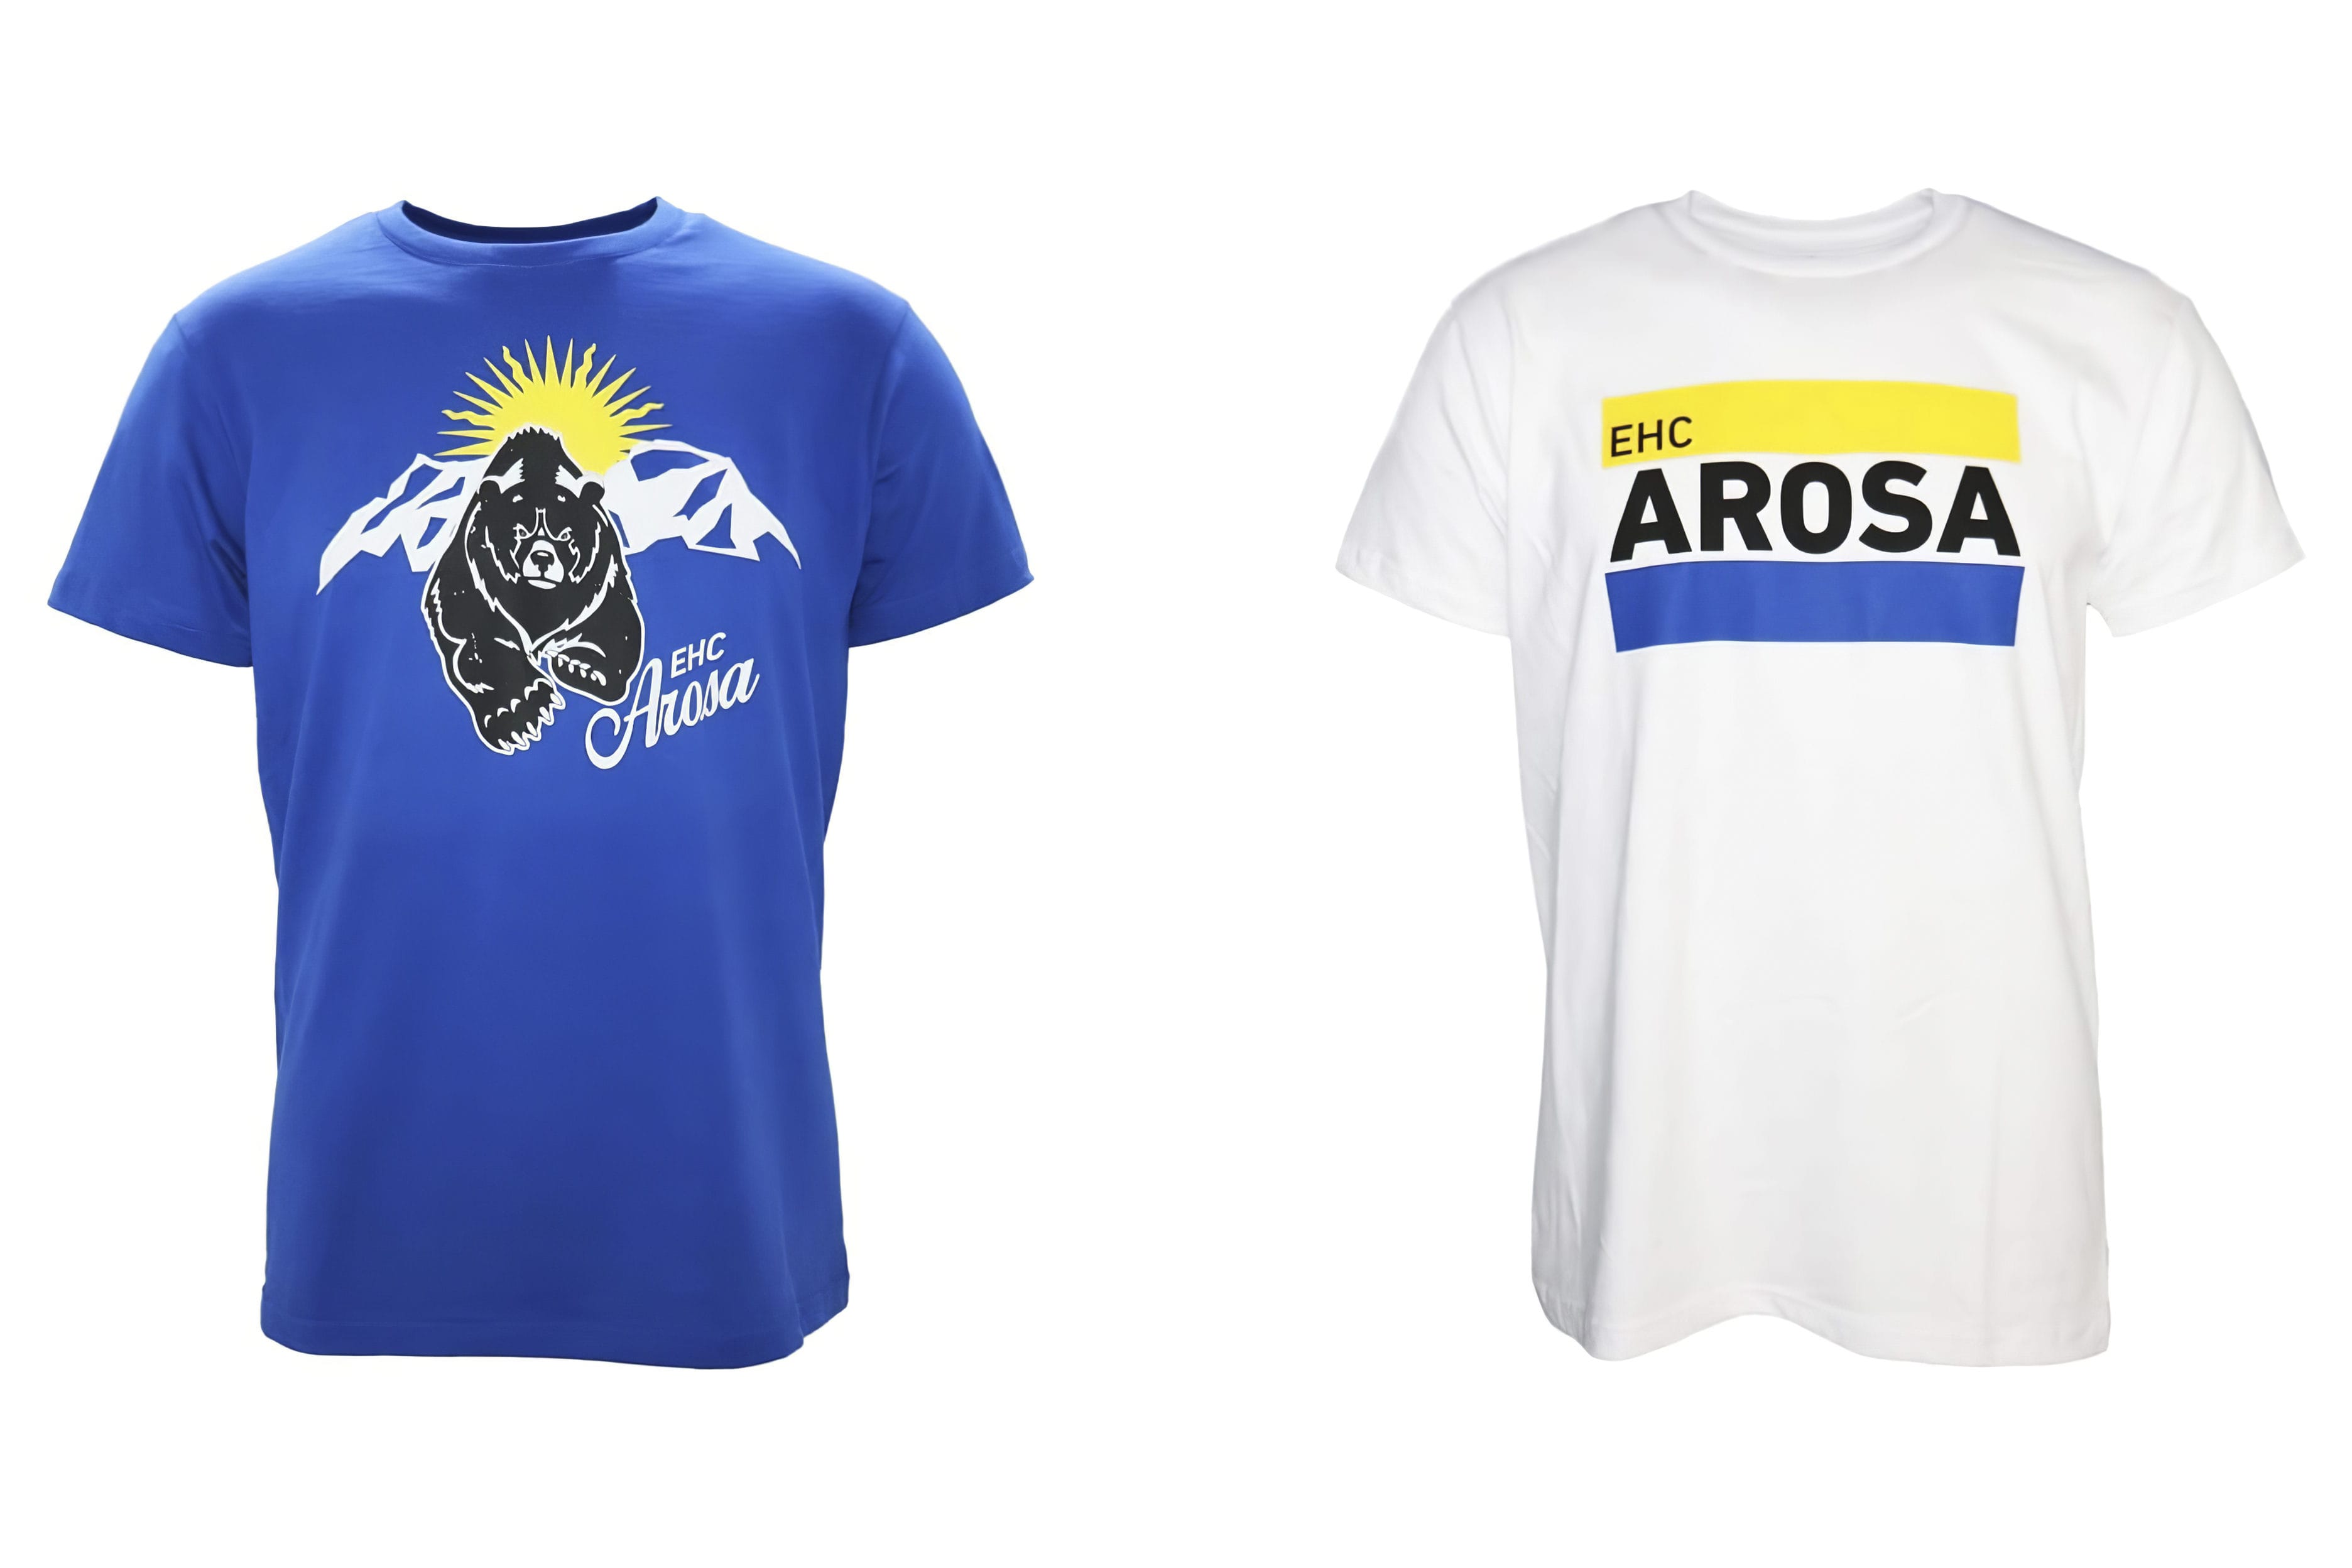 Neue Fanartikel: zwei T-Shirts des EHC Arosa